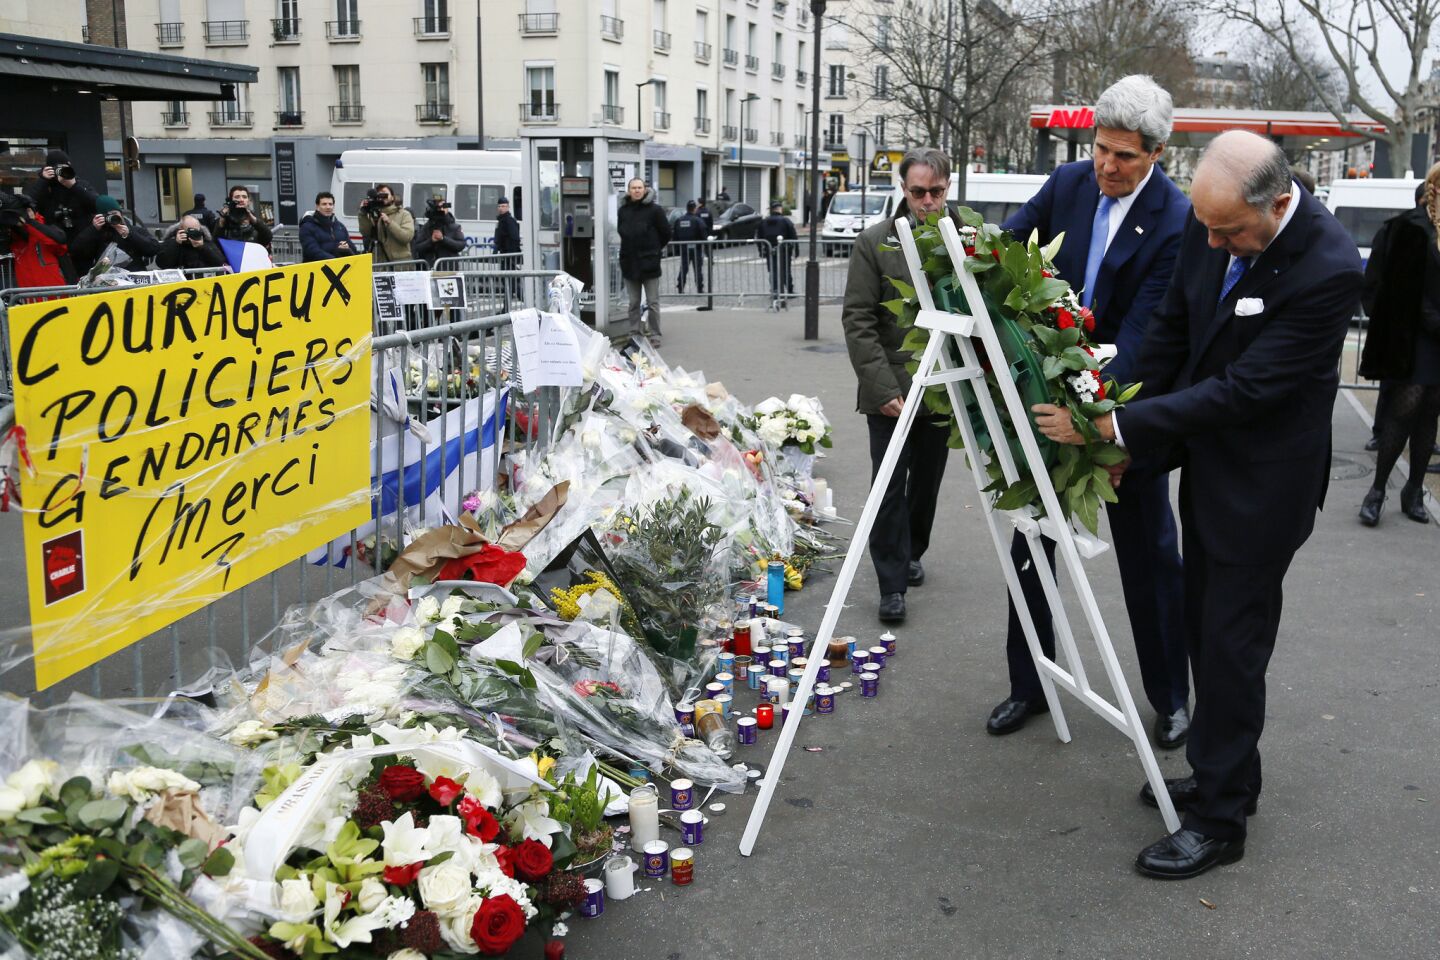 Paris terror attacks